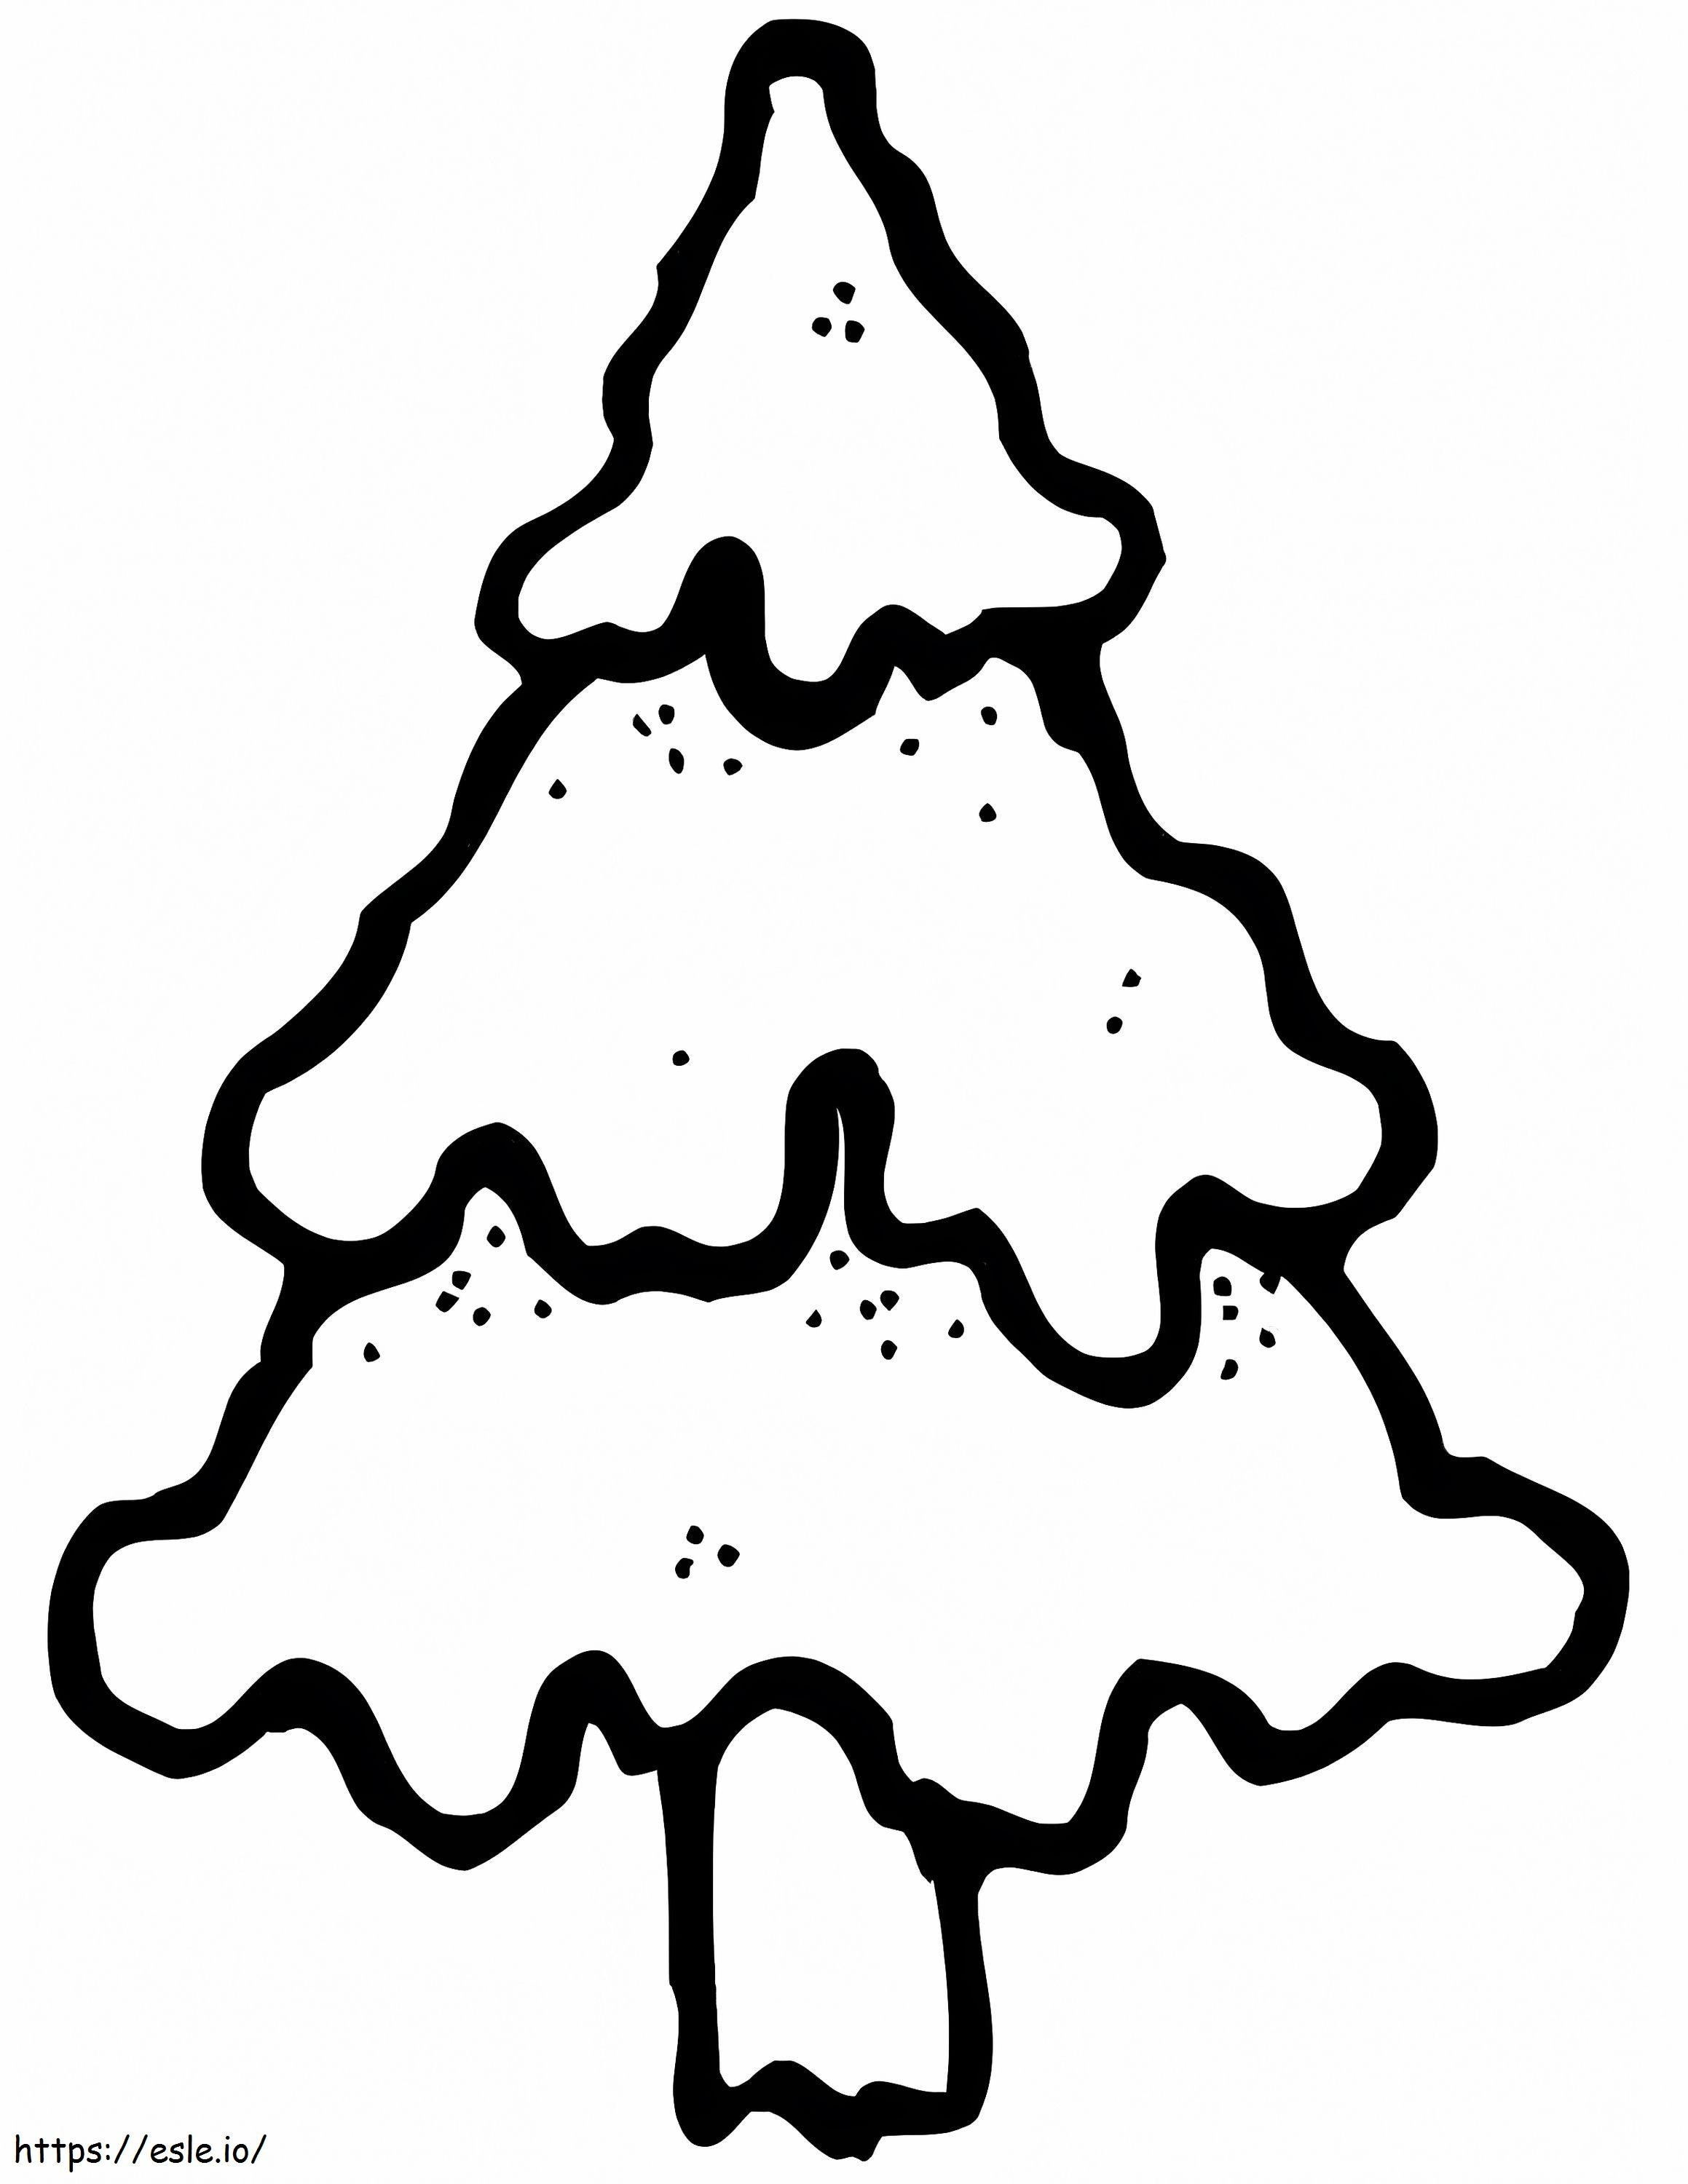 Einfacher Weihnachtsbaum 1 ausmalbilder